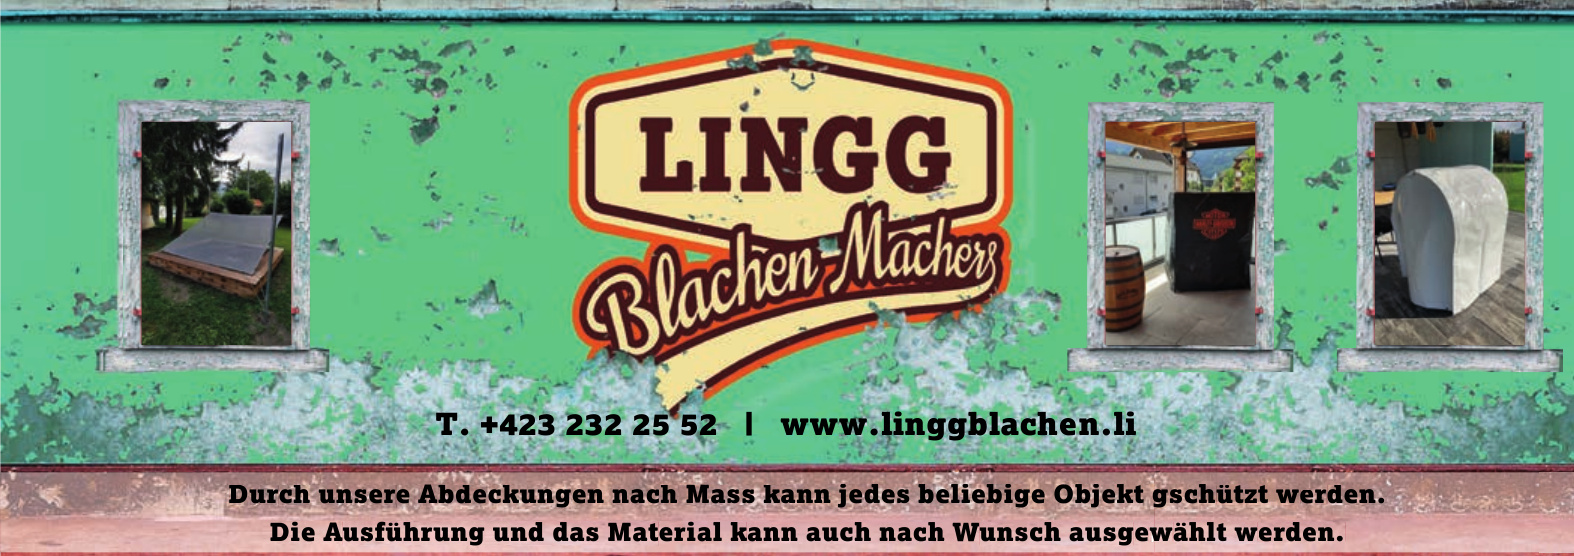 Lingg Blachen-Machers